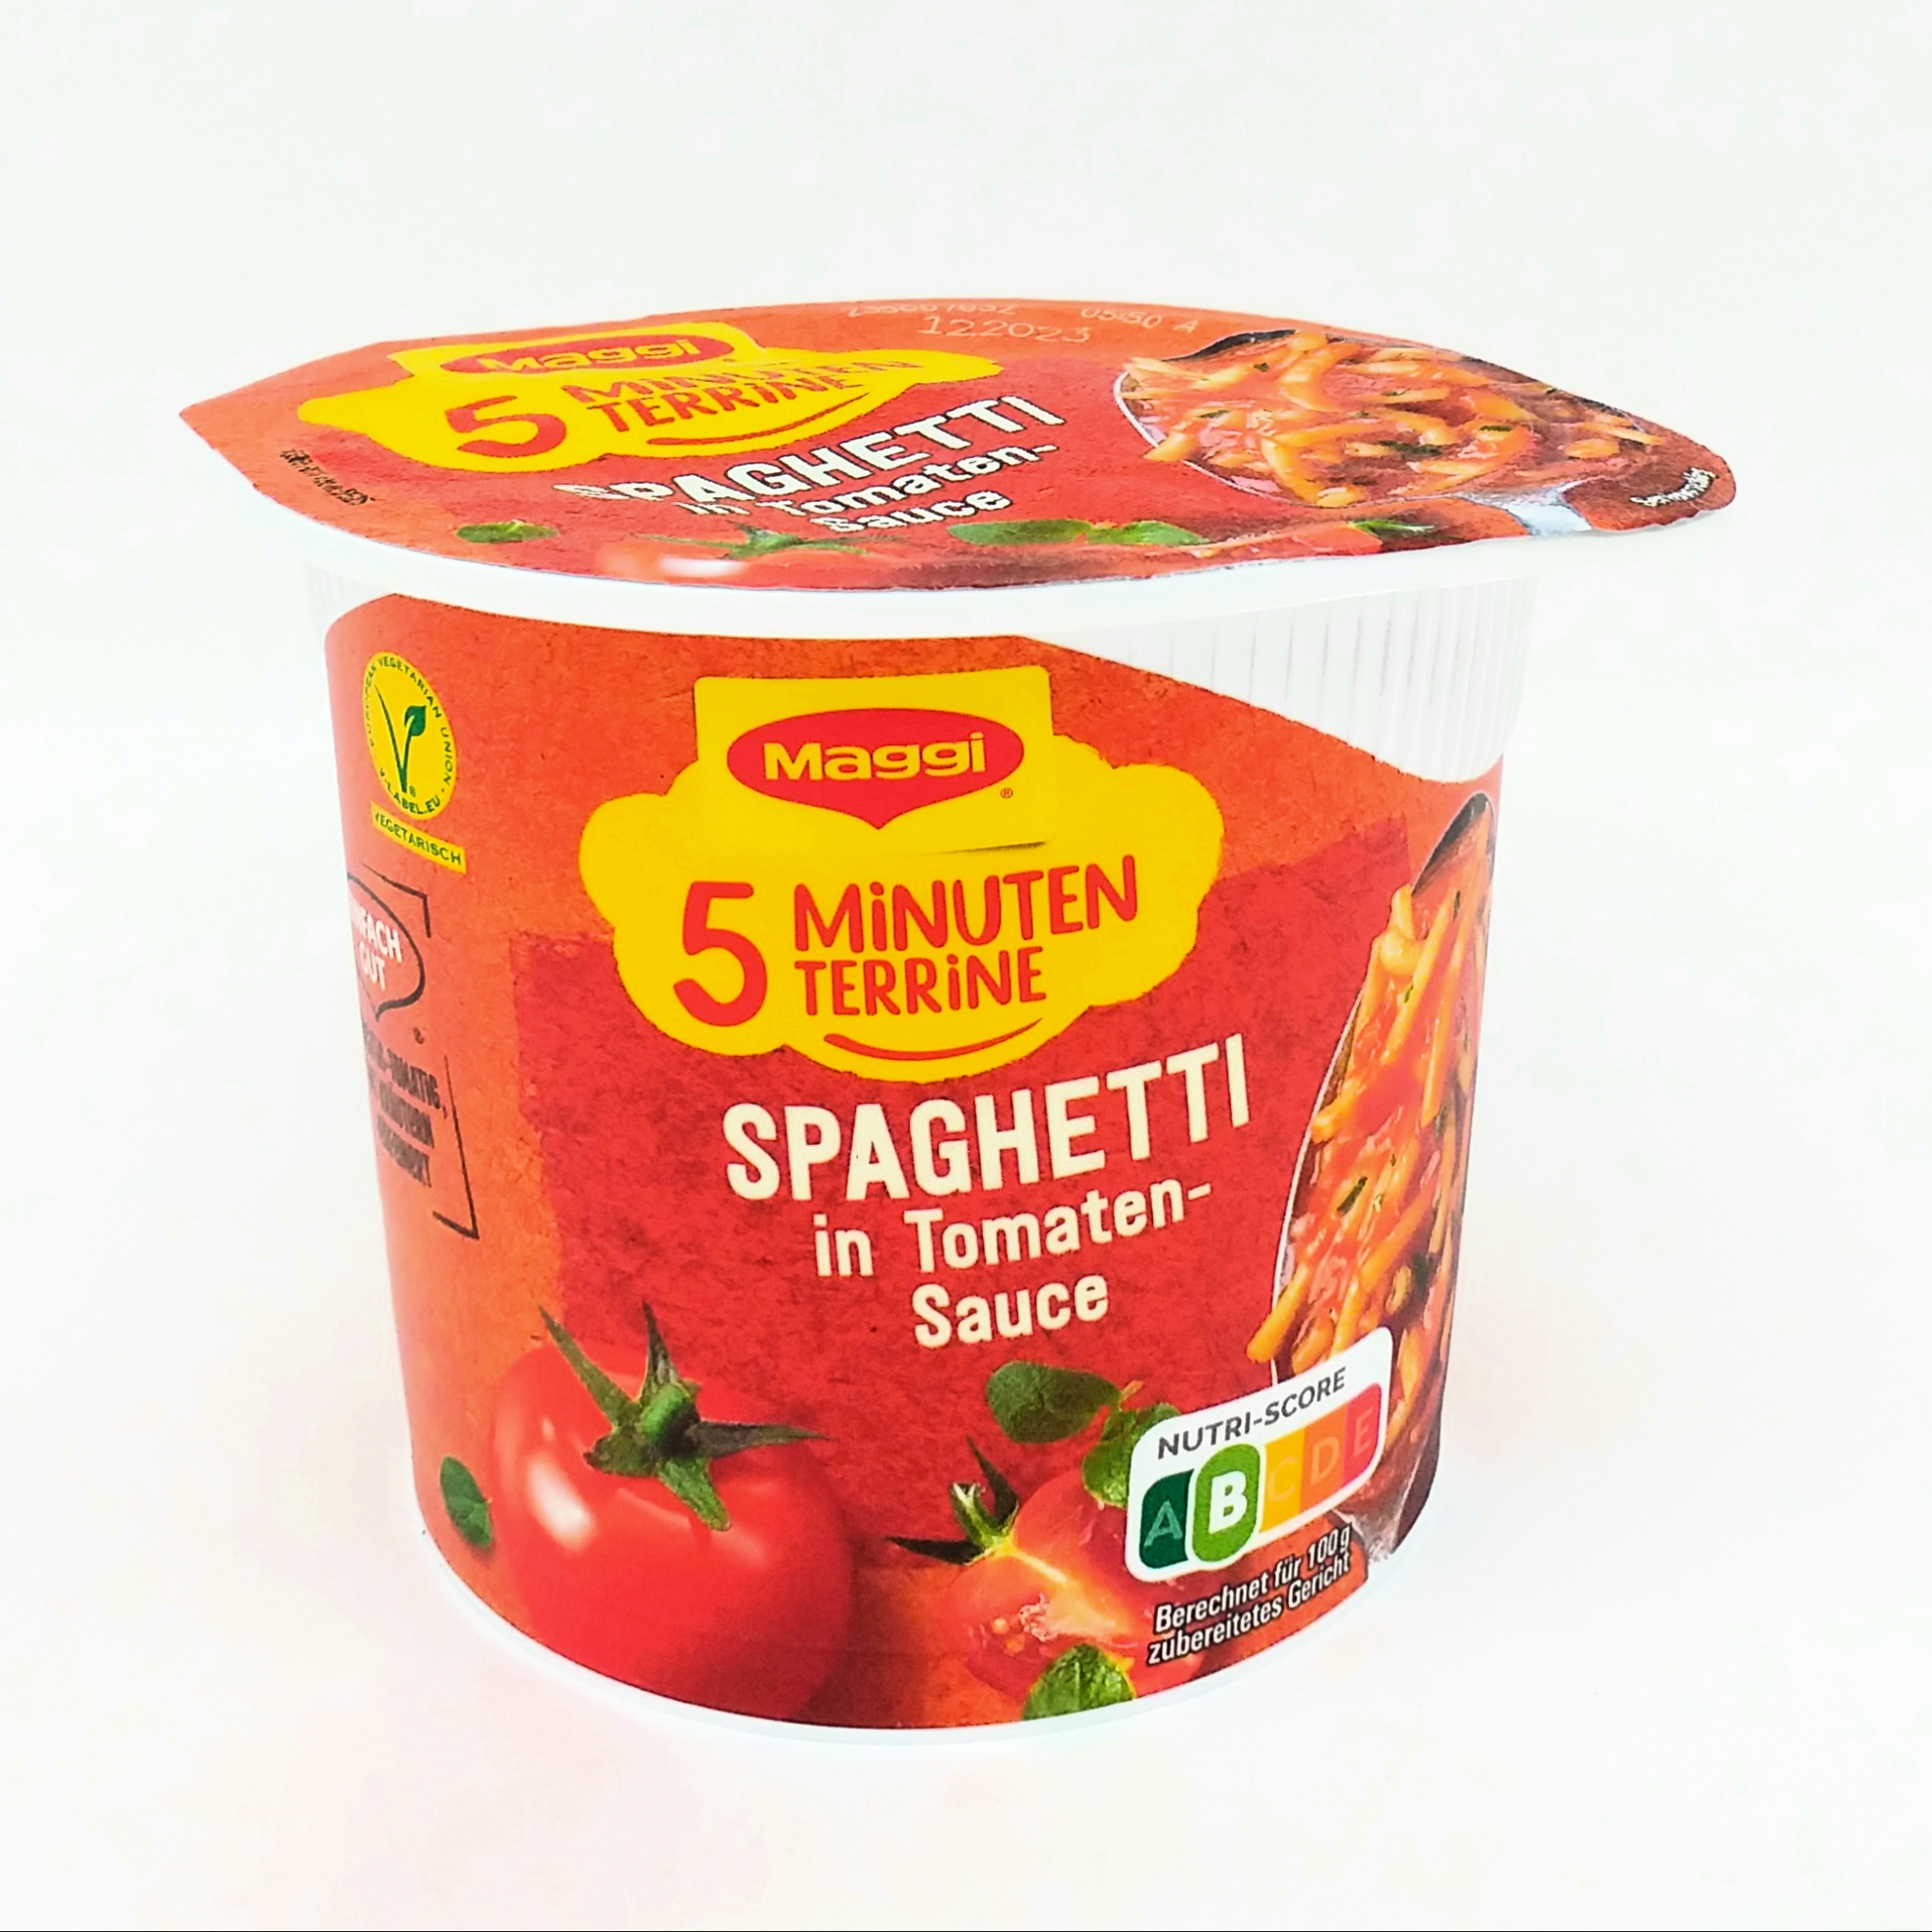 Maggi 5 Minuten Terrine Spaghetti Tomaten-Sauce 60g